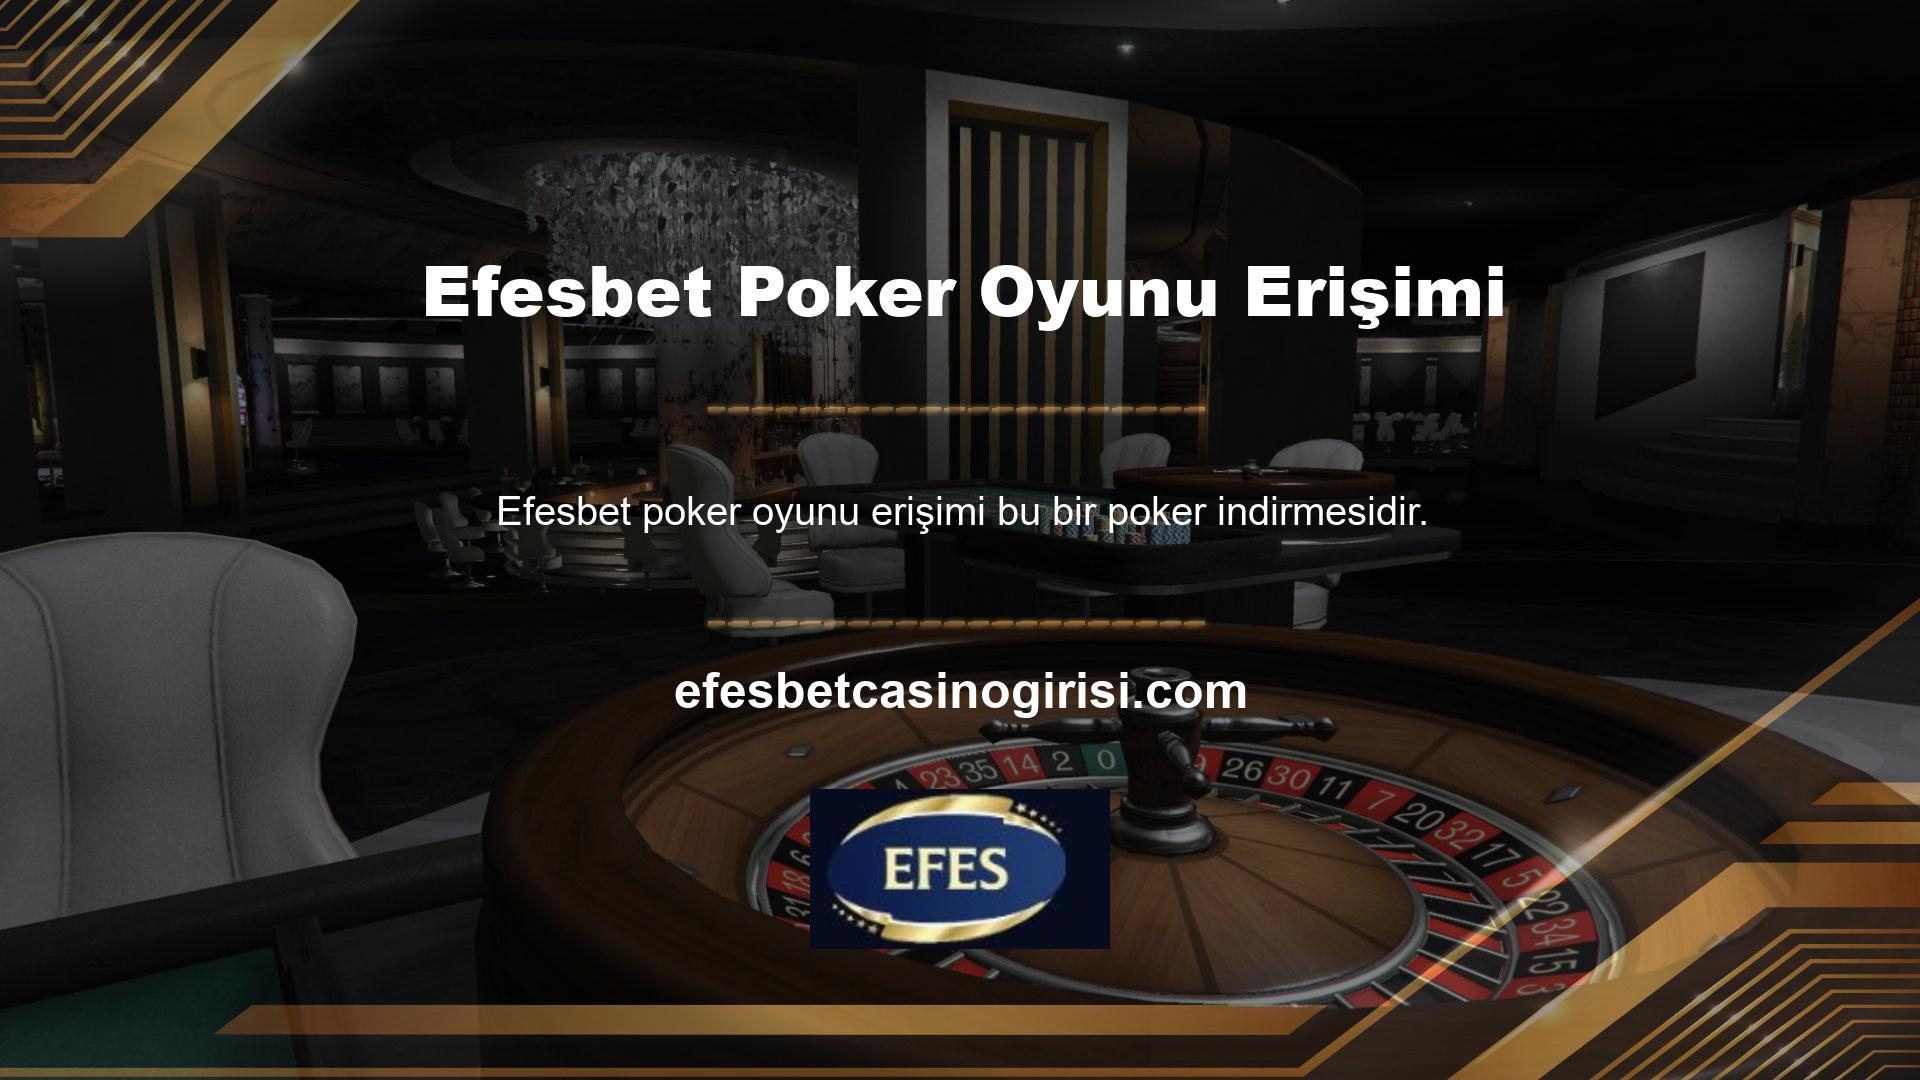 Ayrıca Efesbet poker oyunu bahis sitesini ziyaret ederek poker seçeneklerine de ulaşabilirsiniz